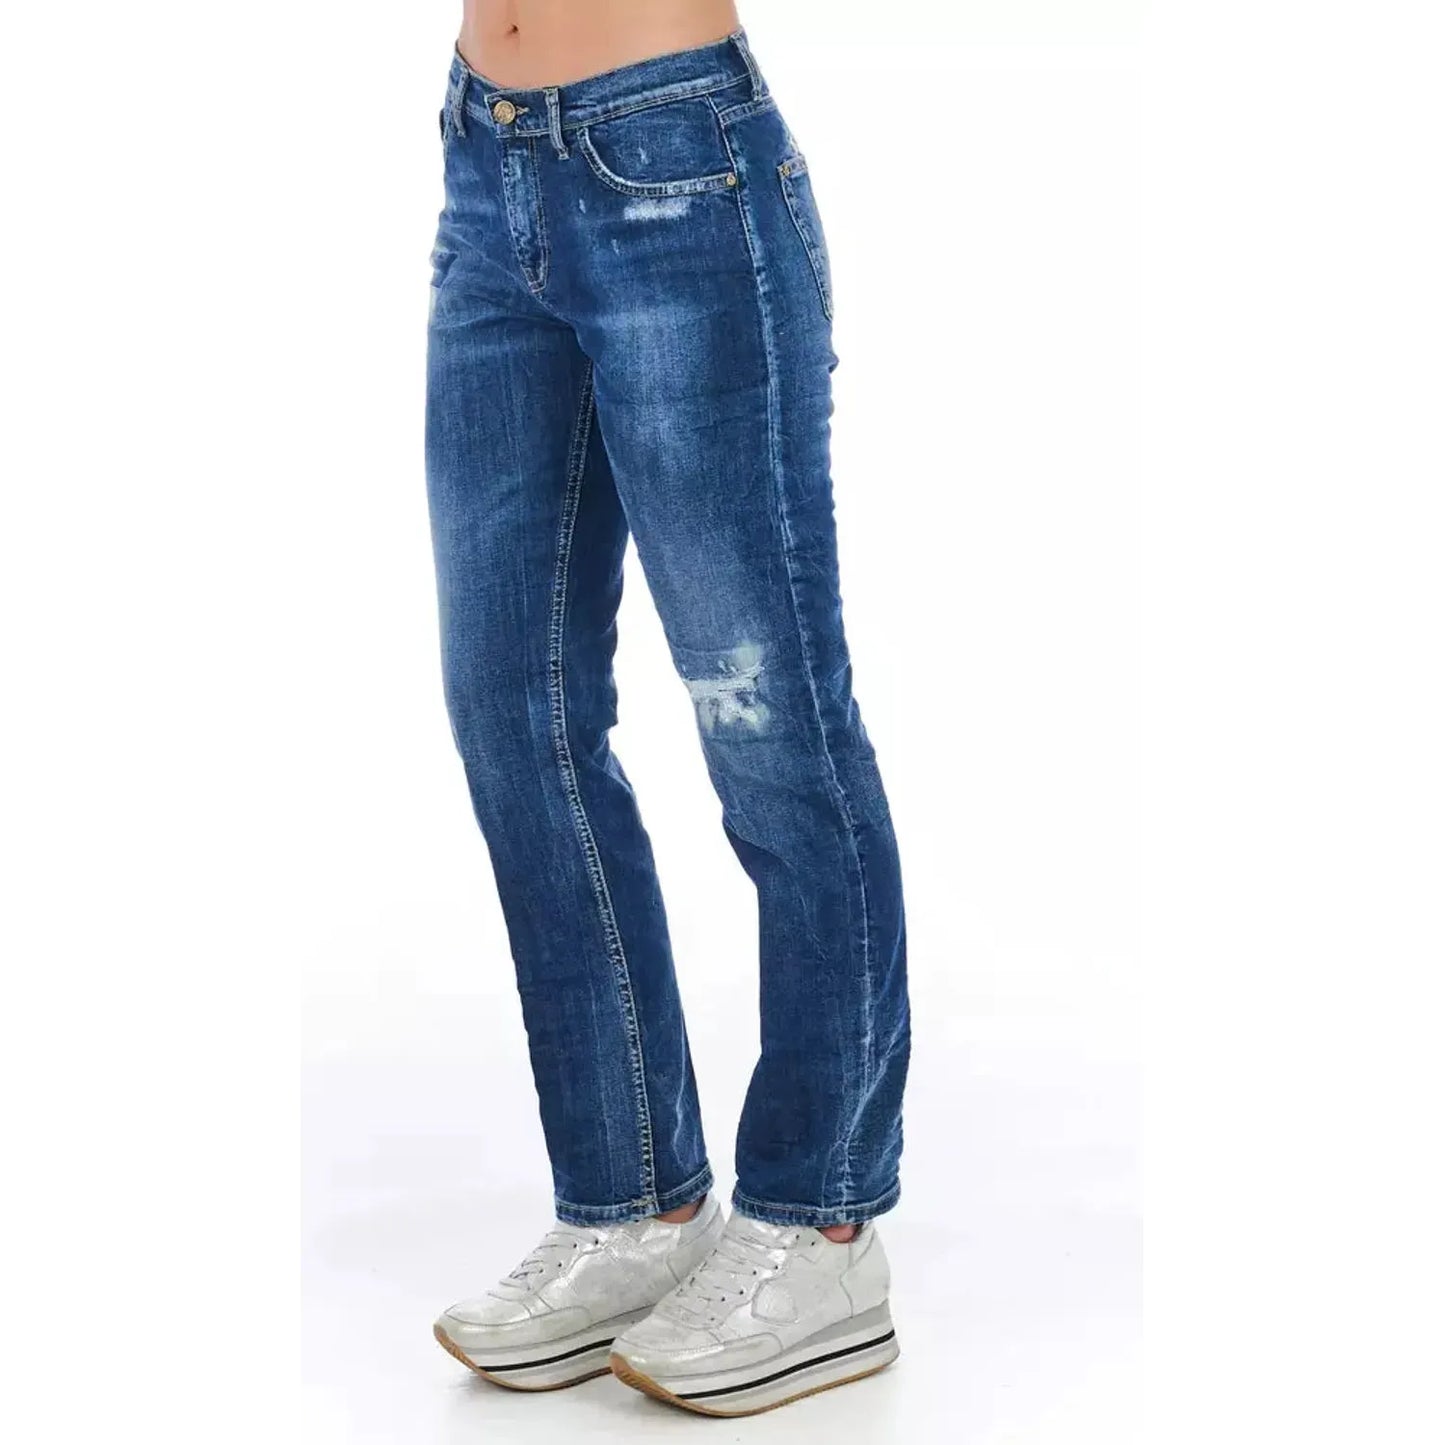 Frankie Morello Blue Cotton Blend Worn Wash Jeans blue-cotton-jeans-pant-51 product-21765-1540743888-22-ebc6aac0-4ae.webp